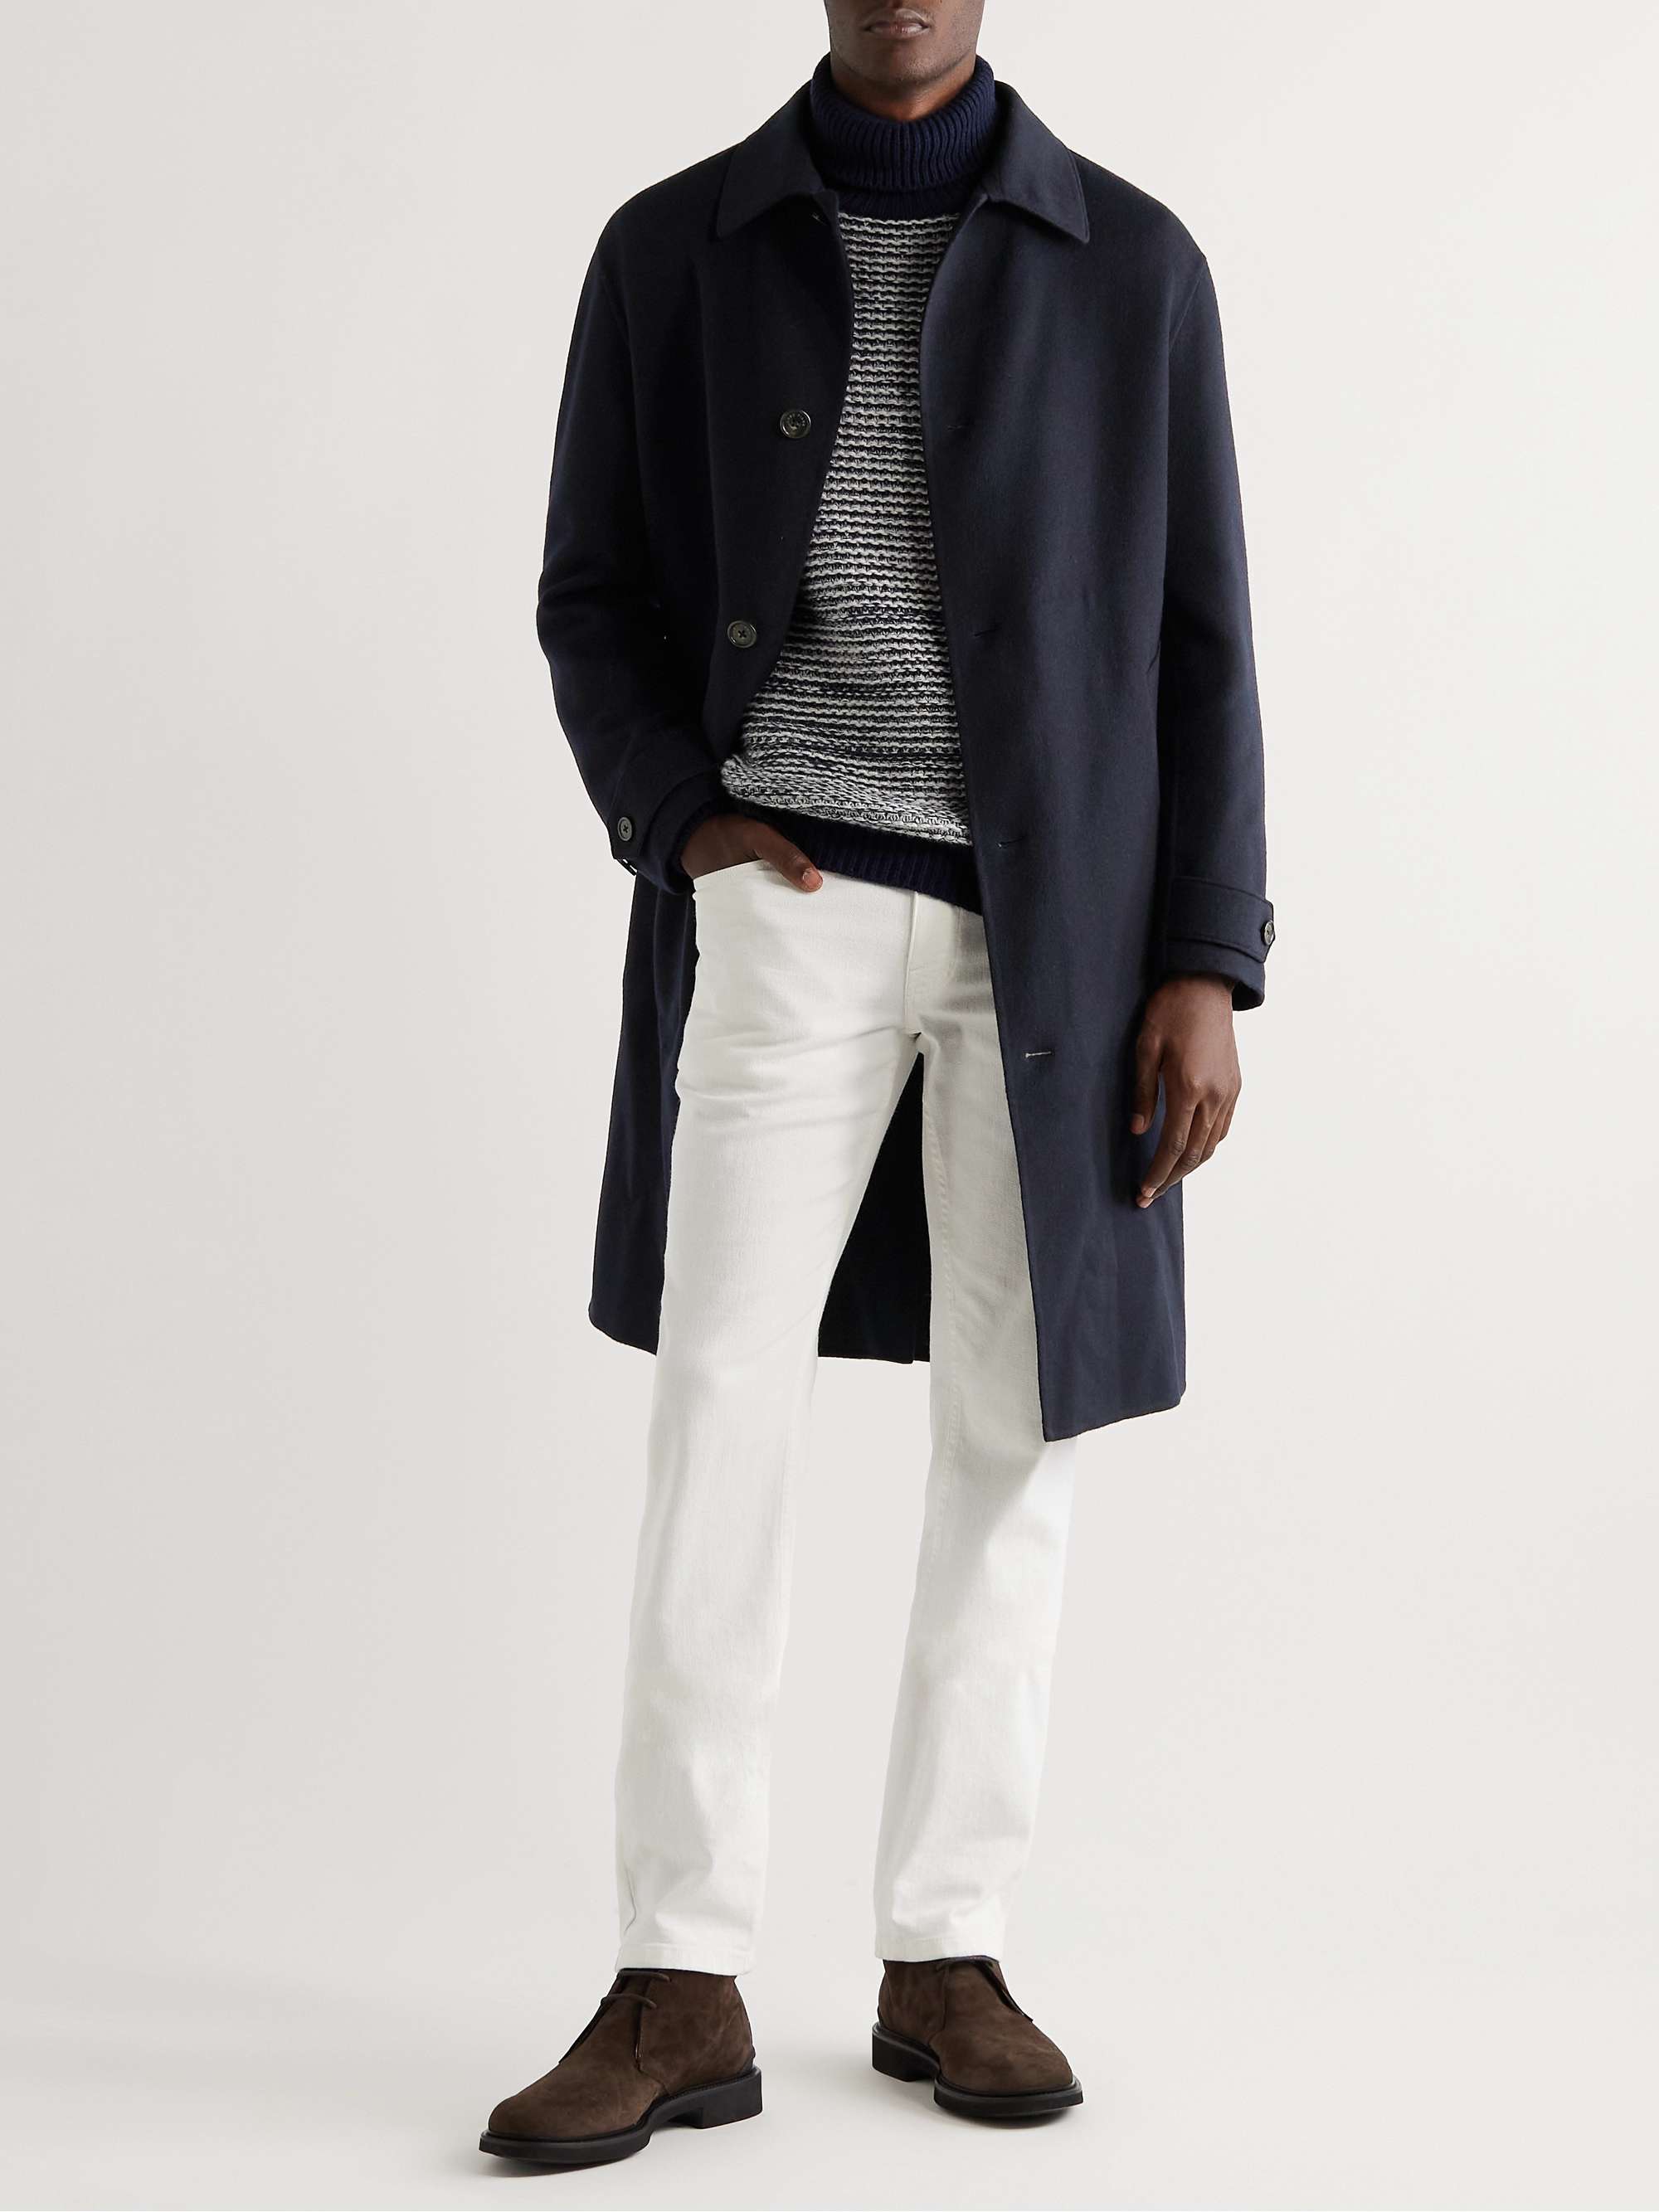 LORO PIANA Bigli Leather-Trimmed Cashmere Coat for Men | MR PORTER